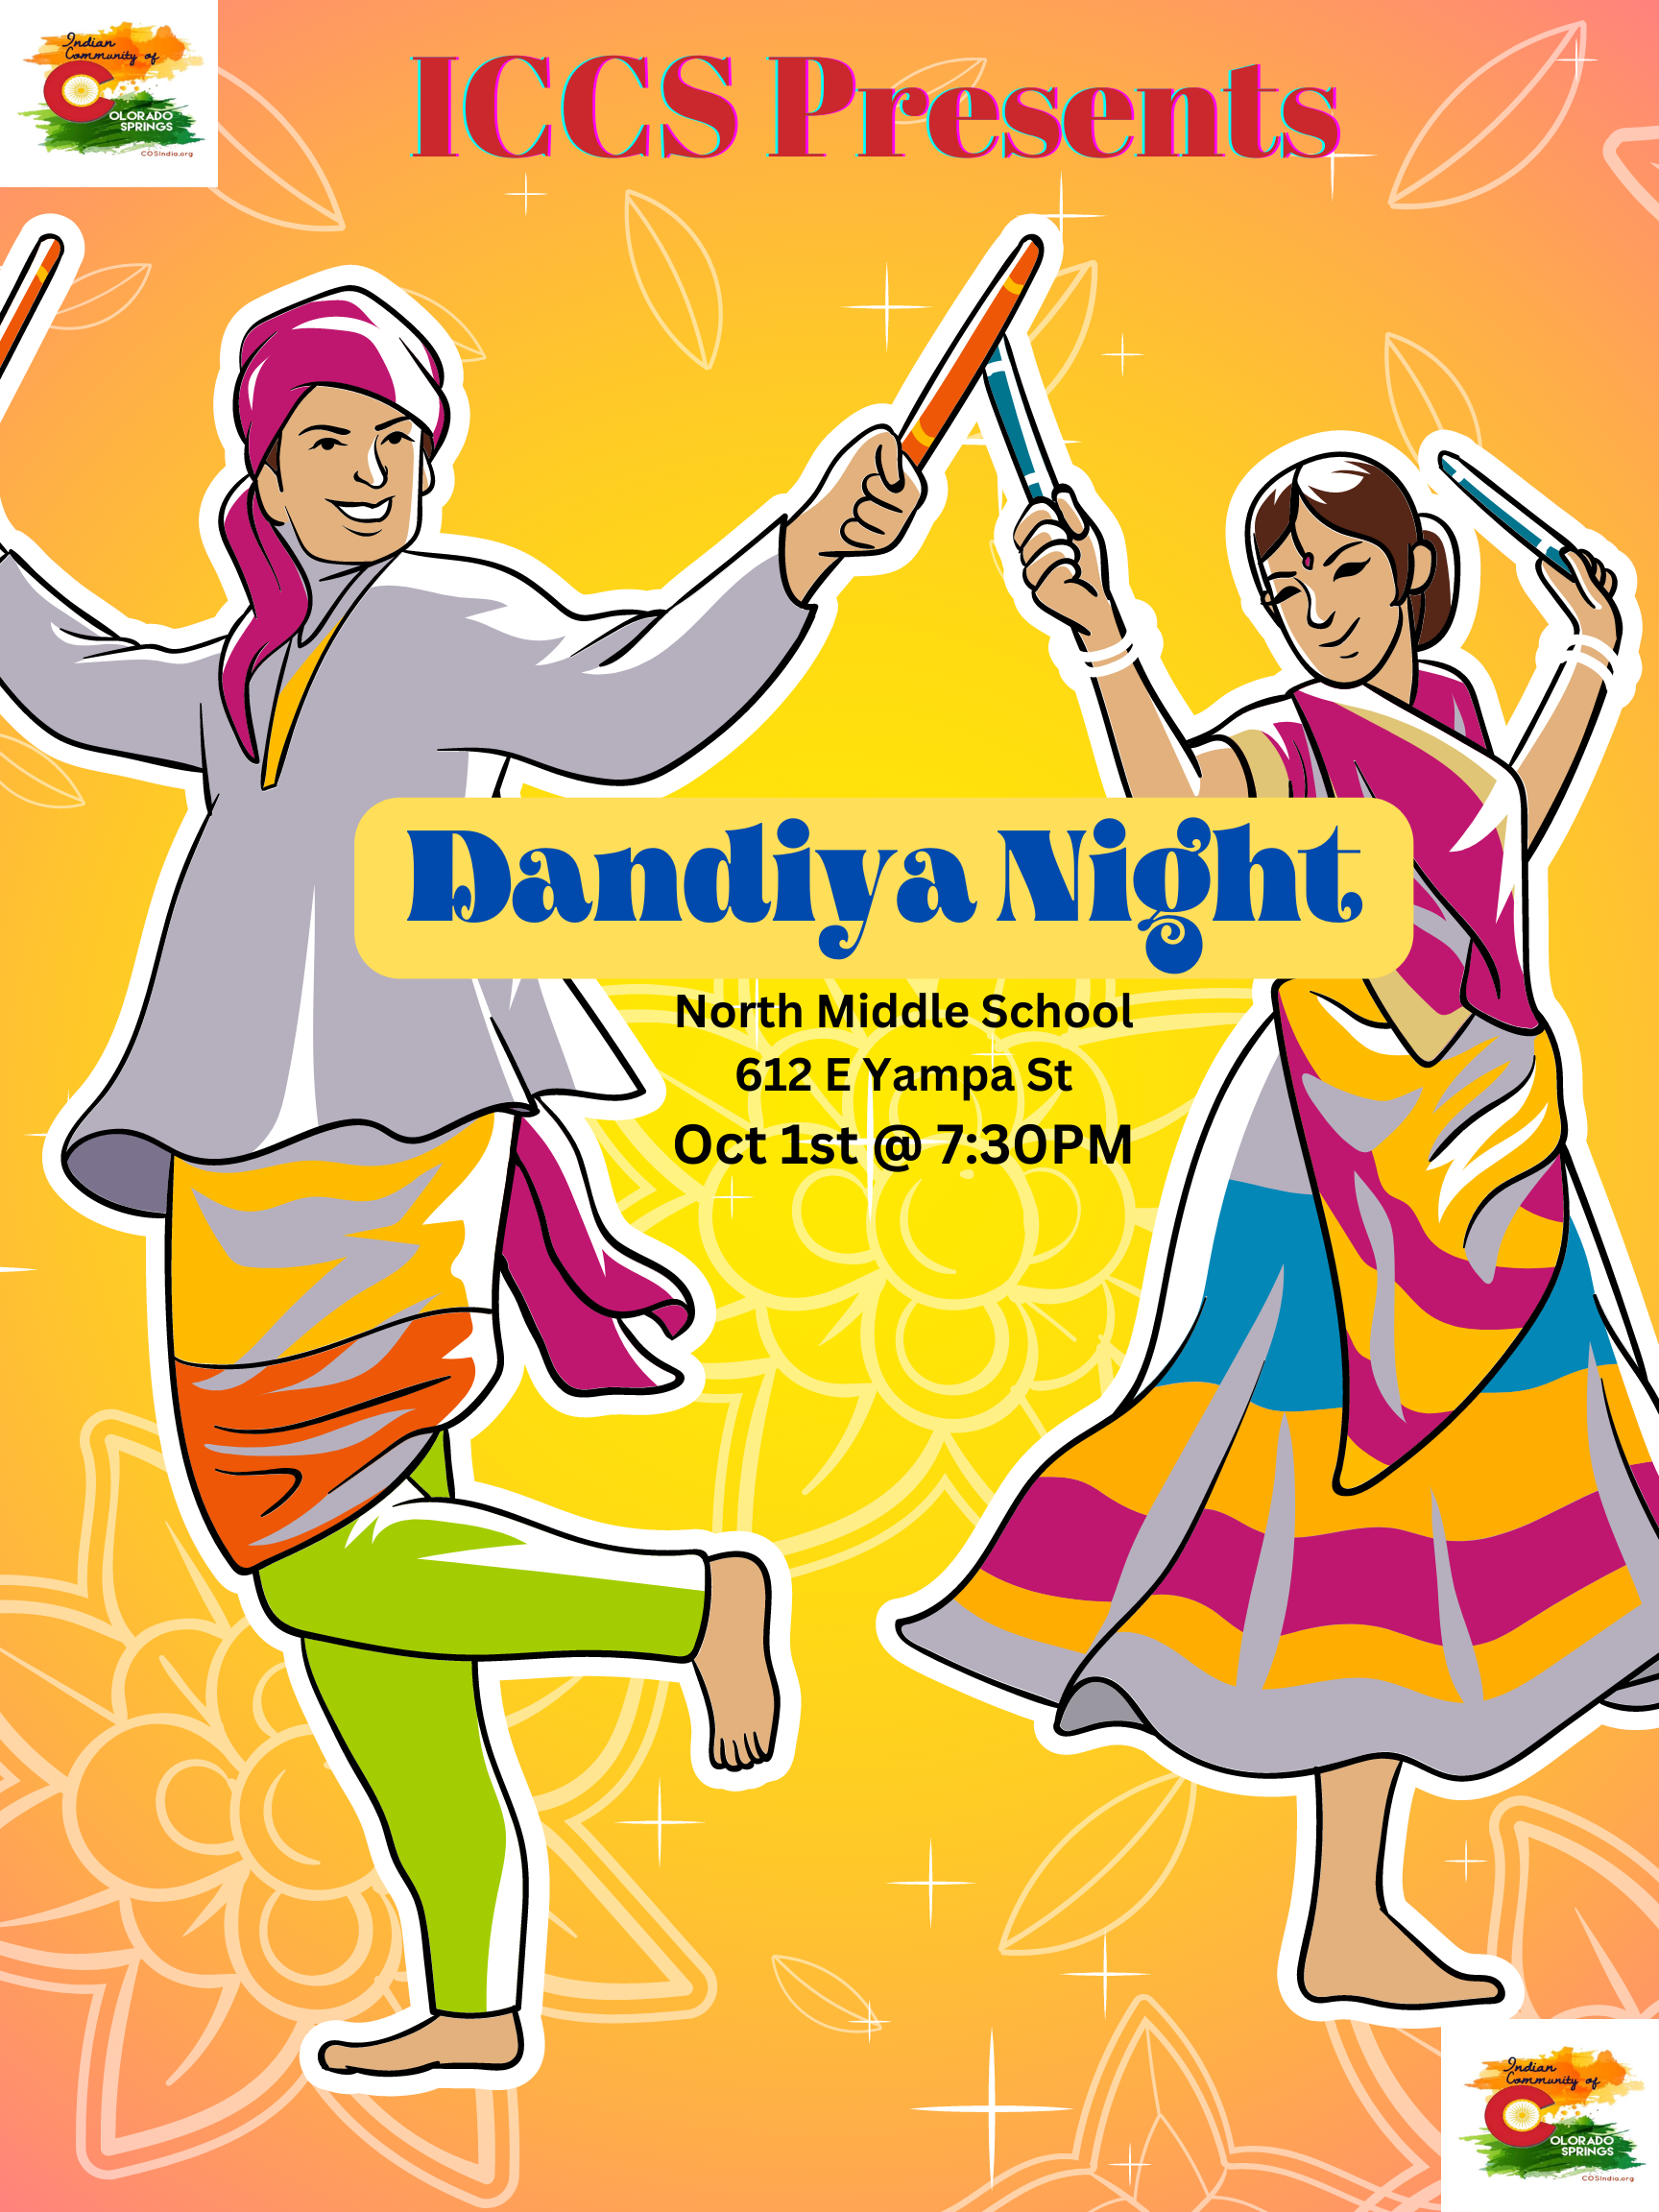 ICCS 2022 Dandiya Night